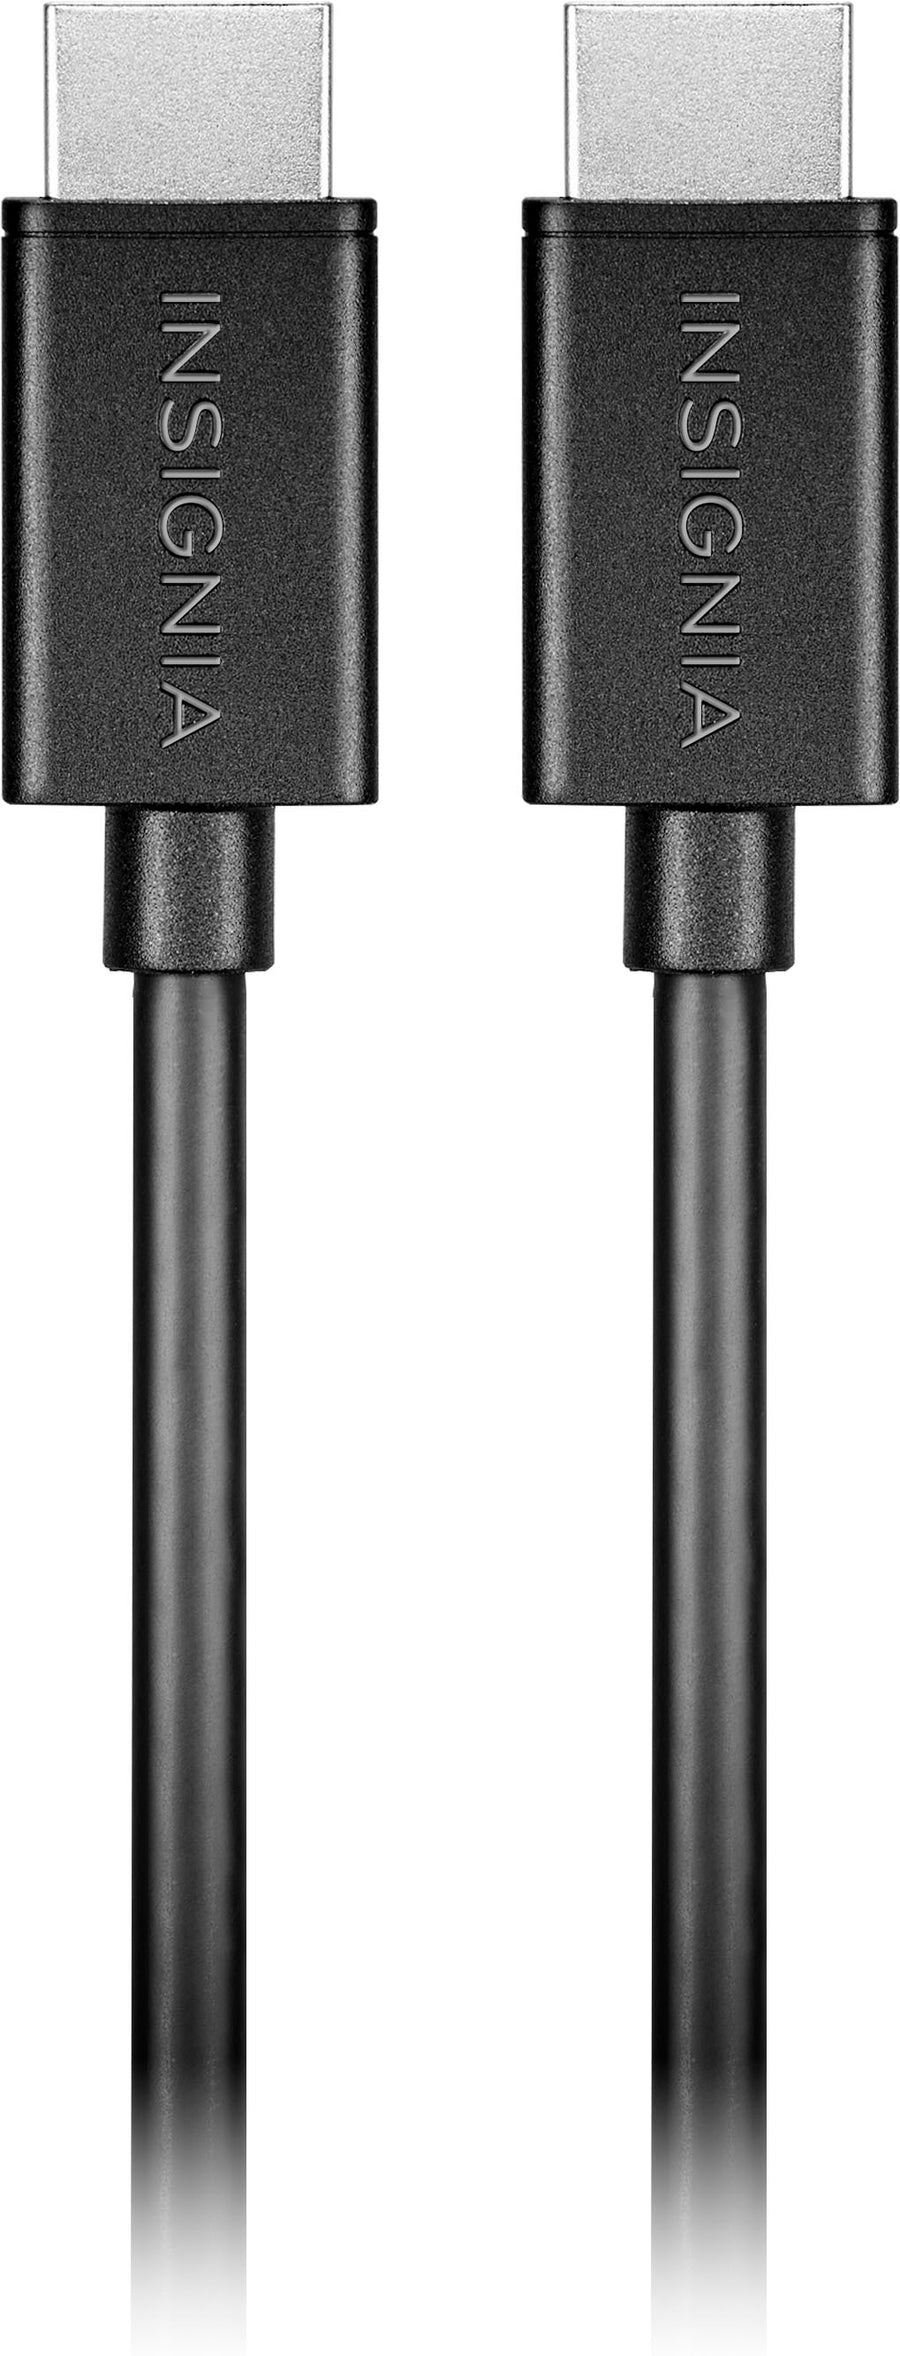 Insignia™ - 12' 4K Ultra HD HDMI Cable - Black_0